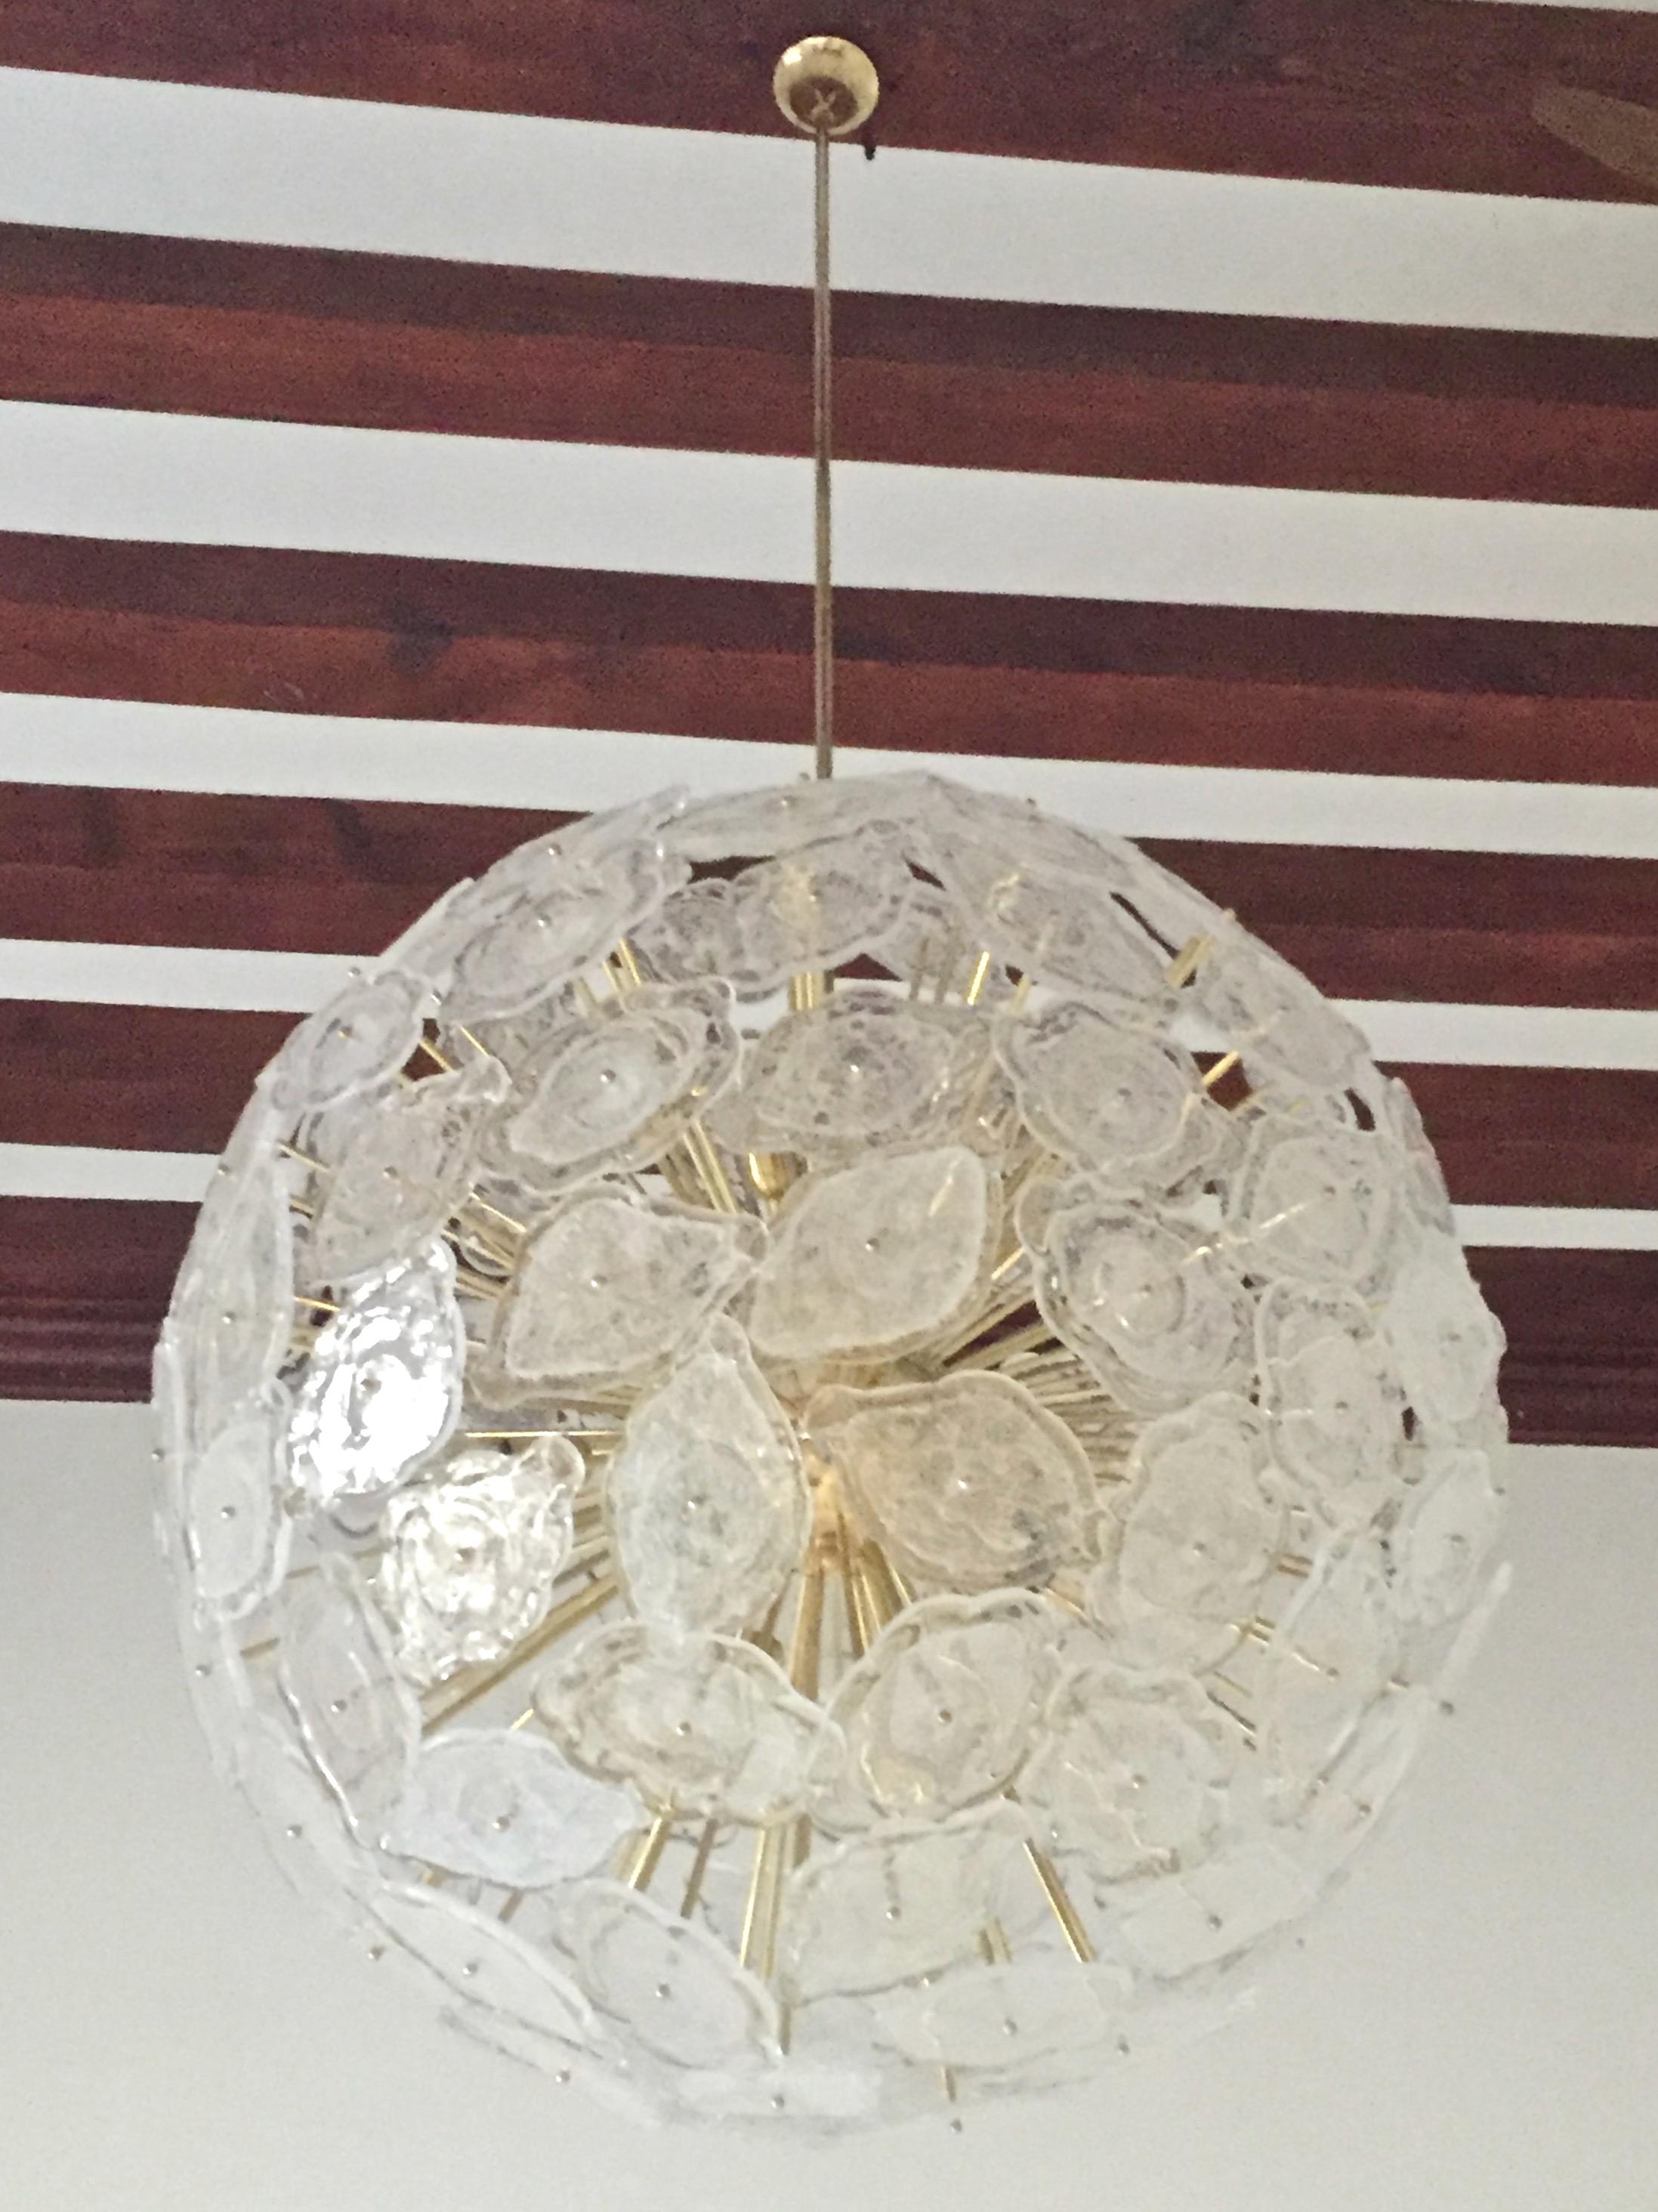 Un lustre Sputnik très élégant, une création sur mesure entièrement faite à la main en Italie avec un style moderne du milieu du siècle. Le design rond montre des détails de construction exquis et une grande qualité d'artisanat. Les feuilles plates